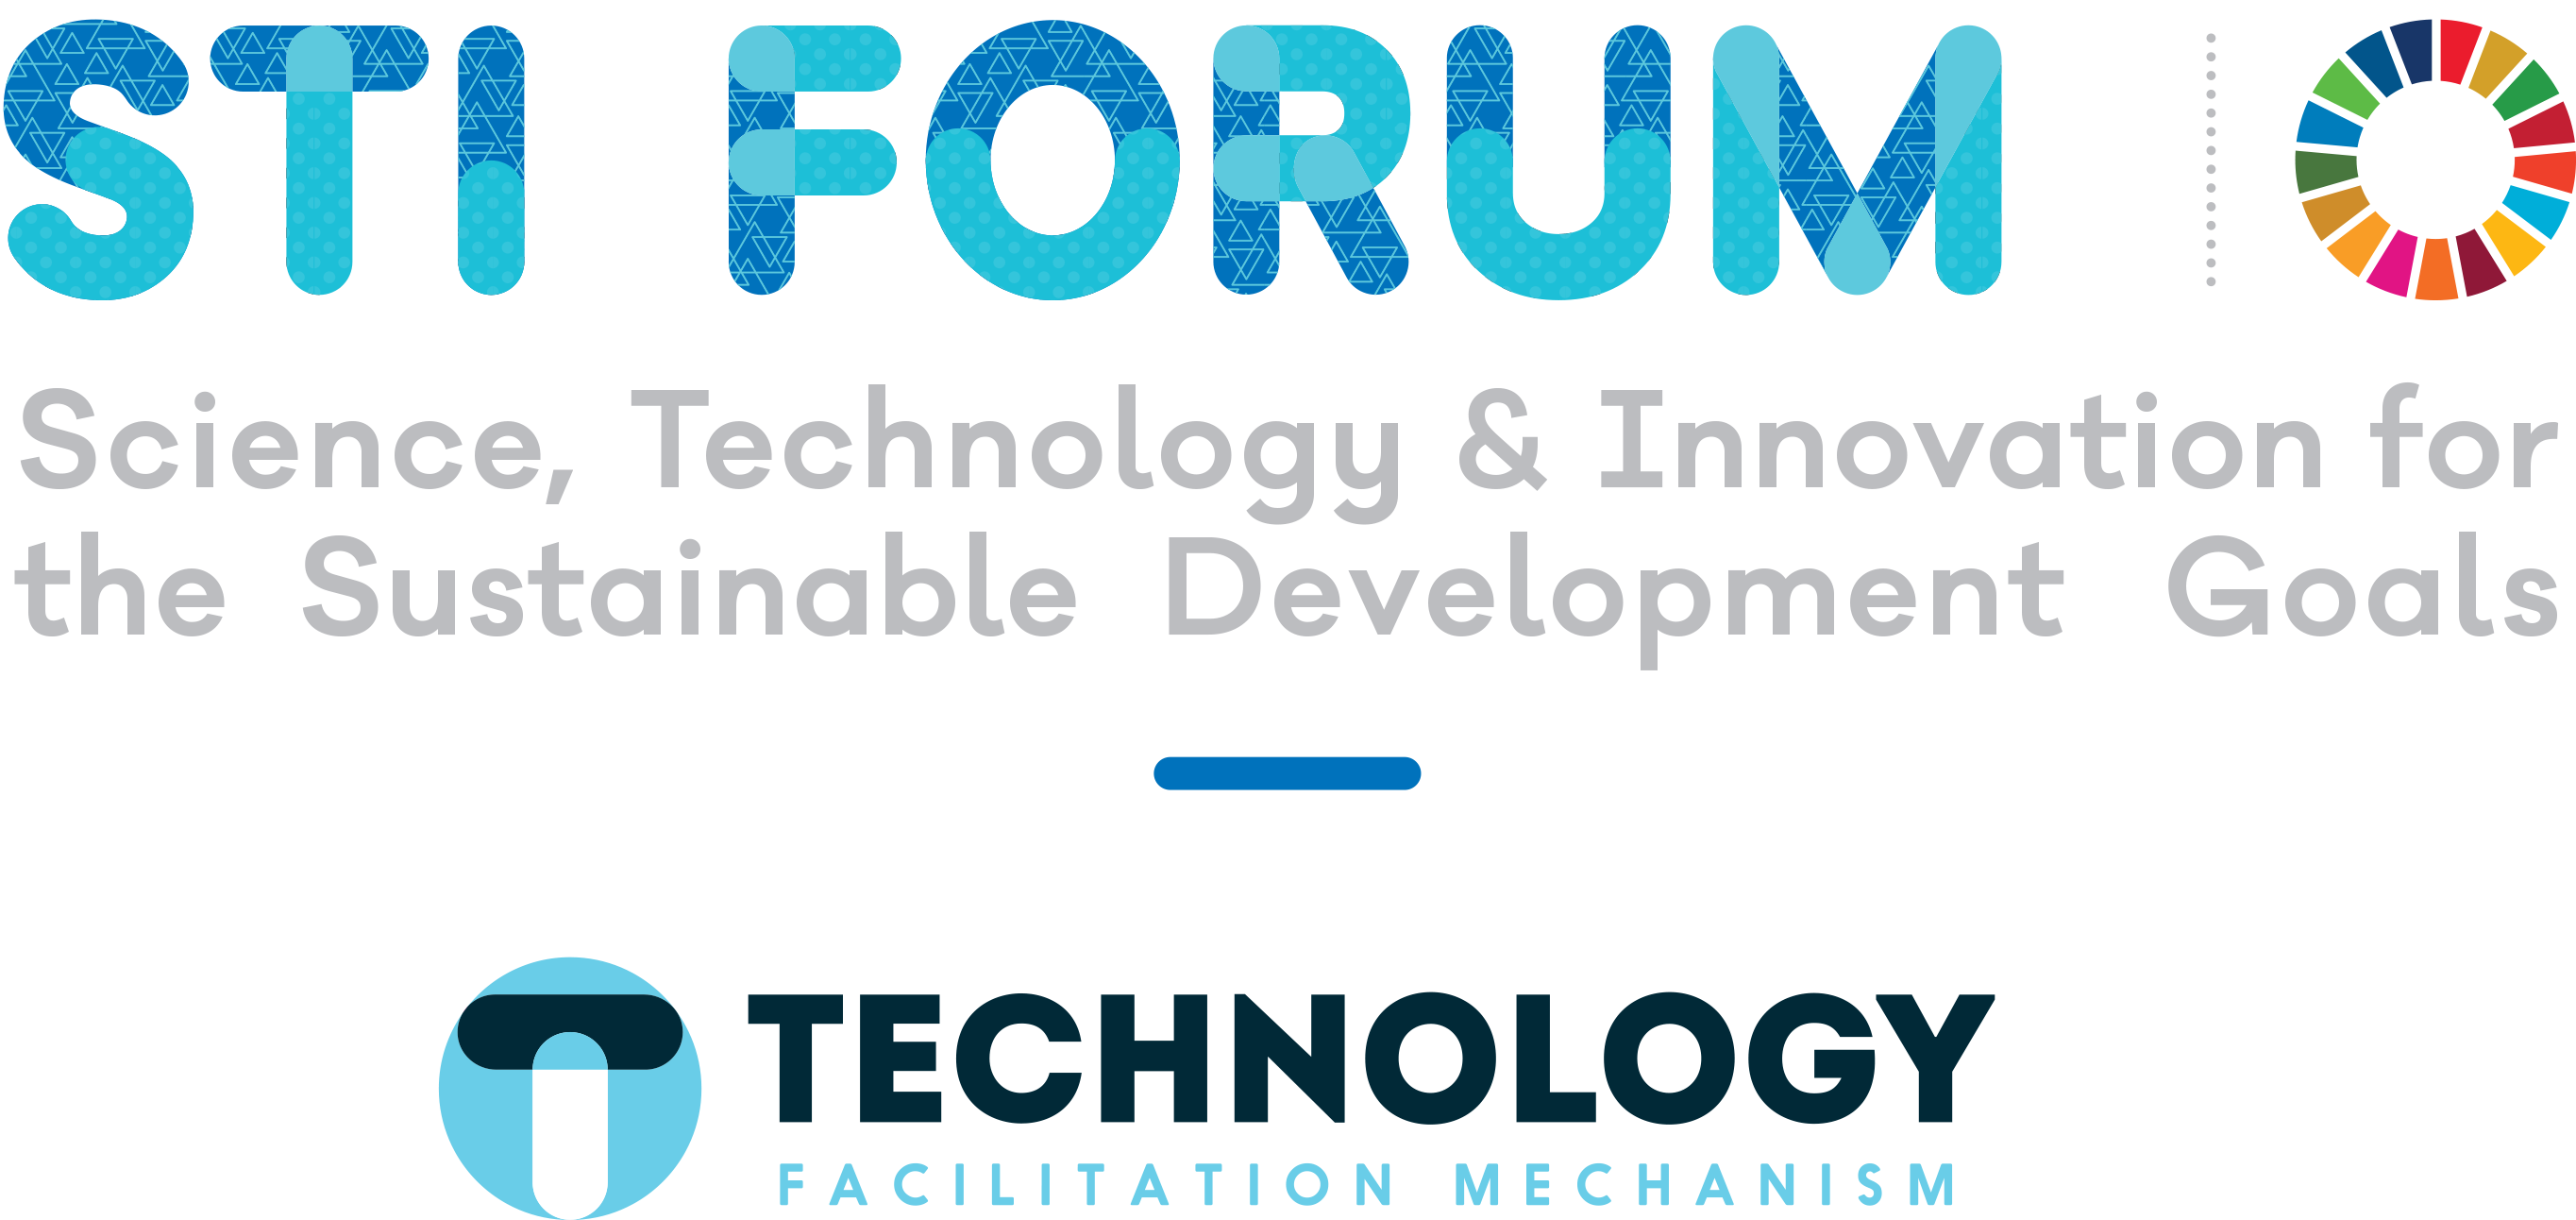 STI Forum logo